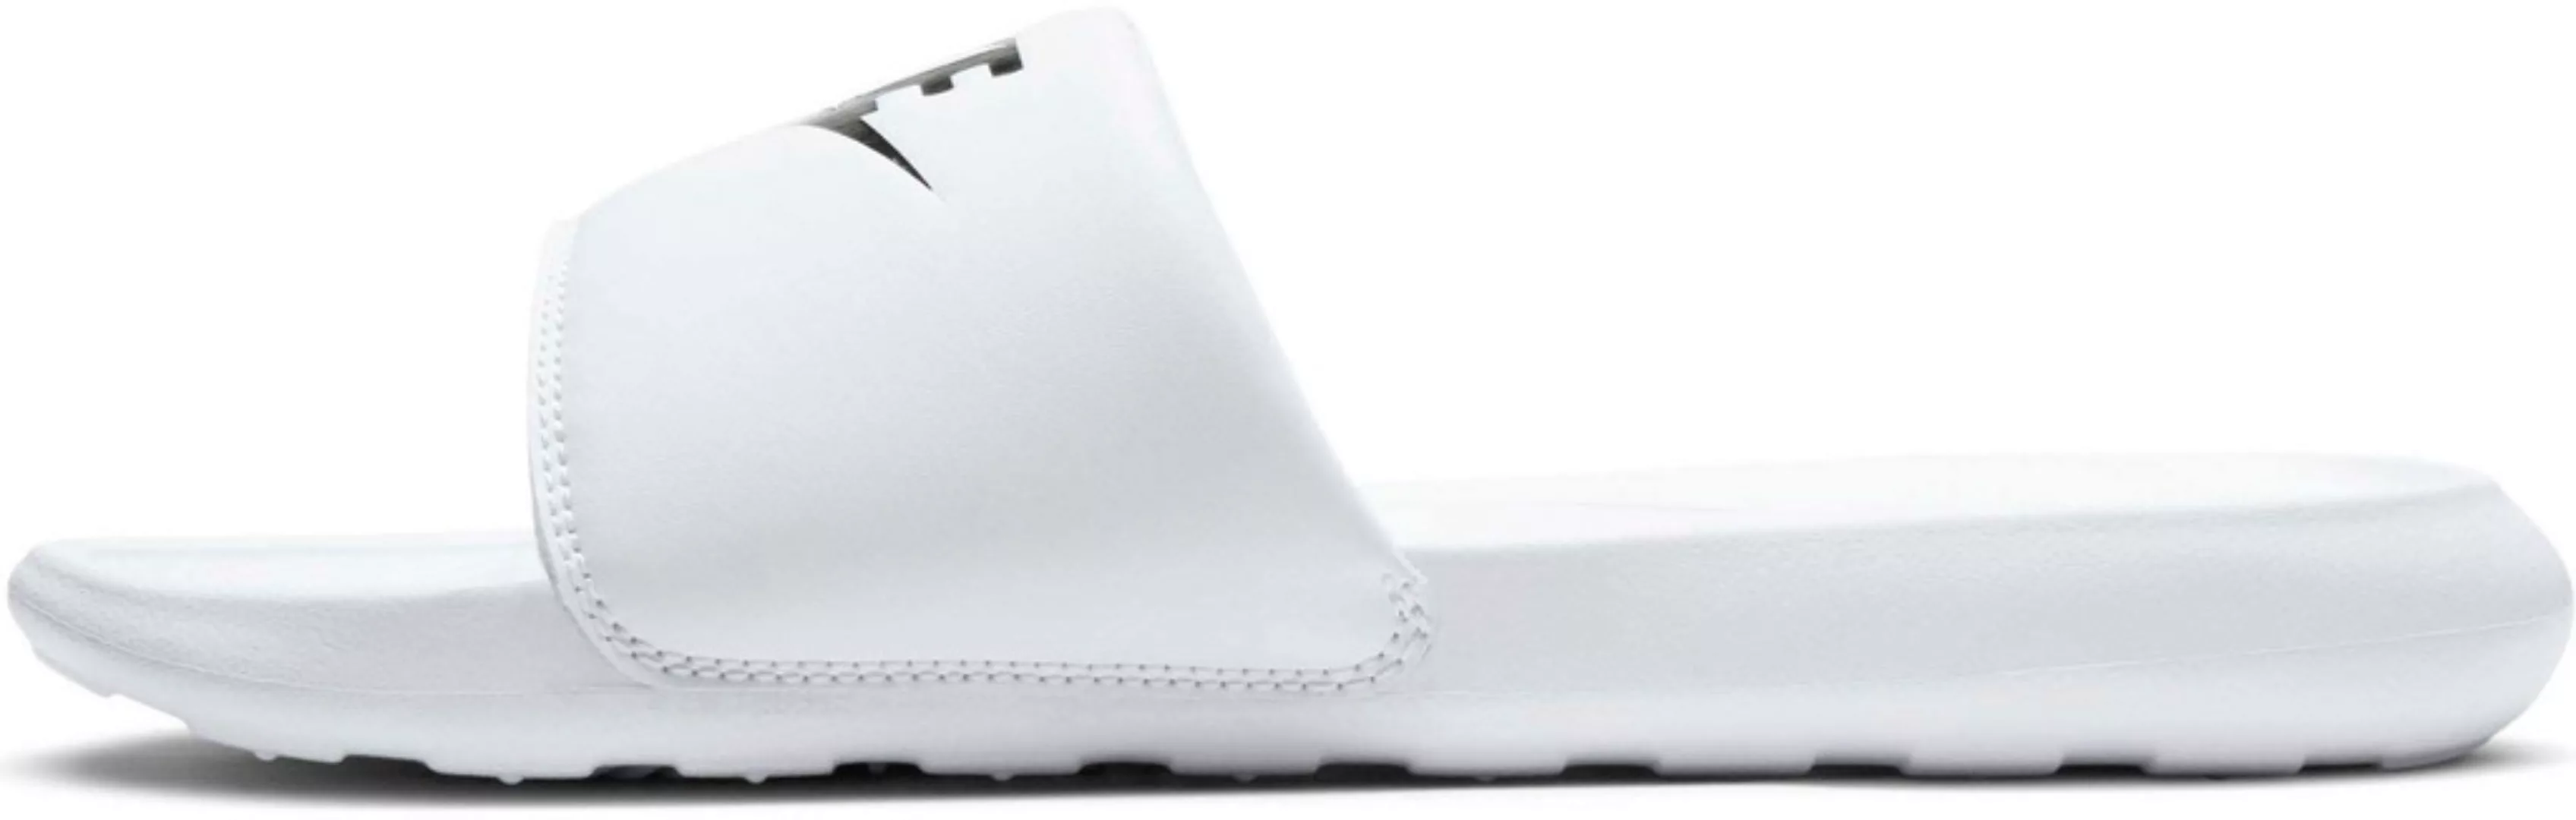 Nike Victori One Flip-flops EU 35 1/2 White / Black / White günstig online kaufen